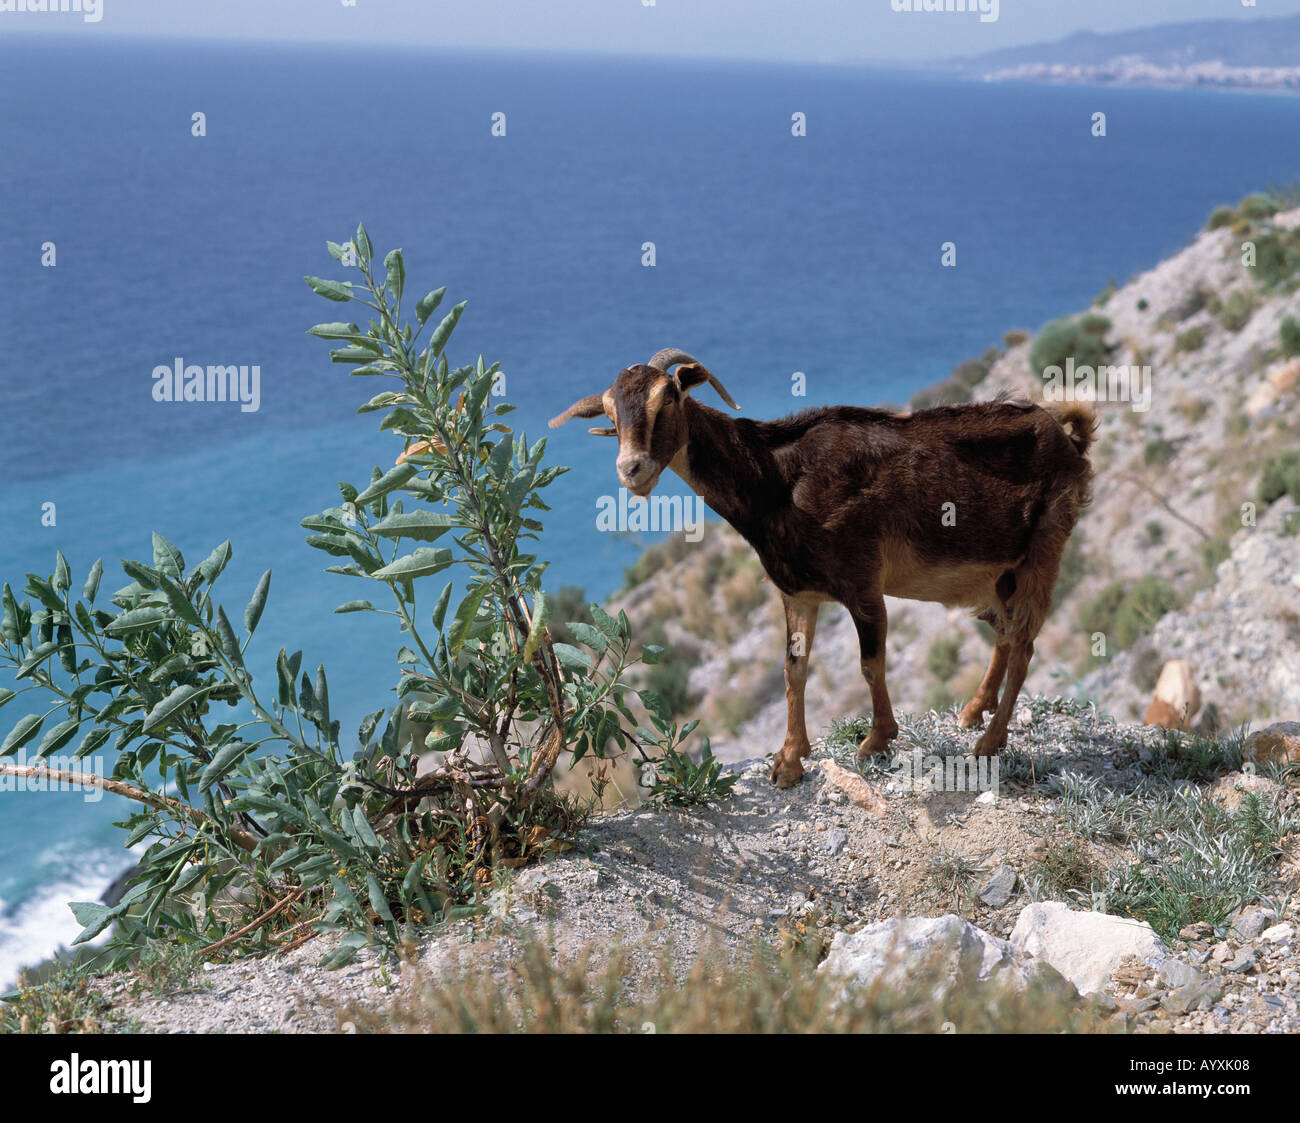 Ziege steht auf steinigem Grund ueber dem Meer, Abhang, Andalusien Stock Photo